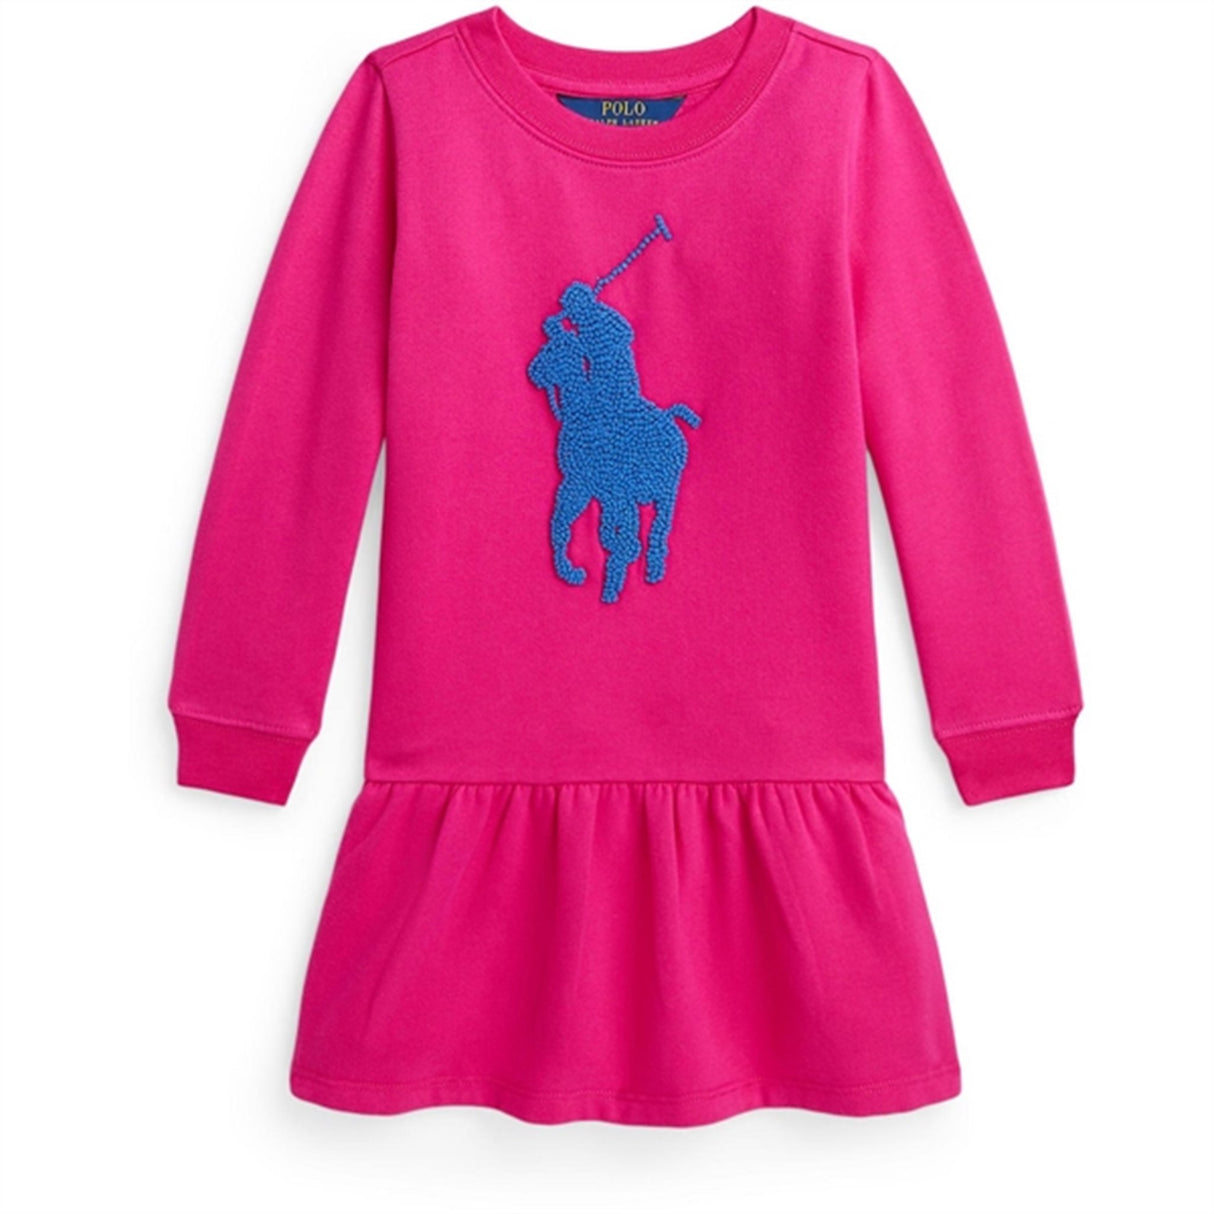 Polo Ralph Lauren Girls Dress Bright Pink W/ Blue